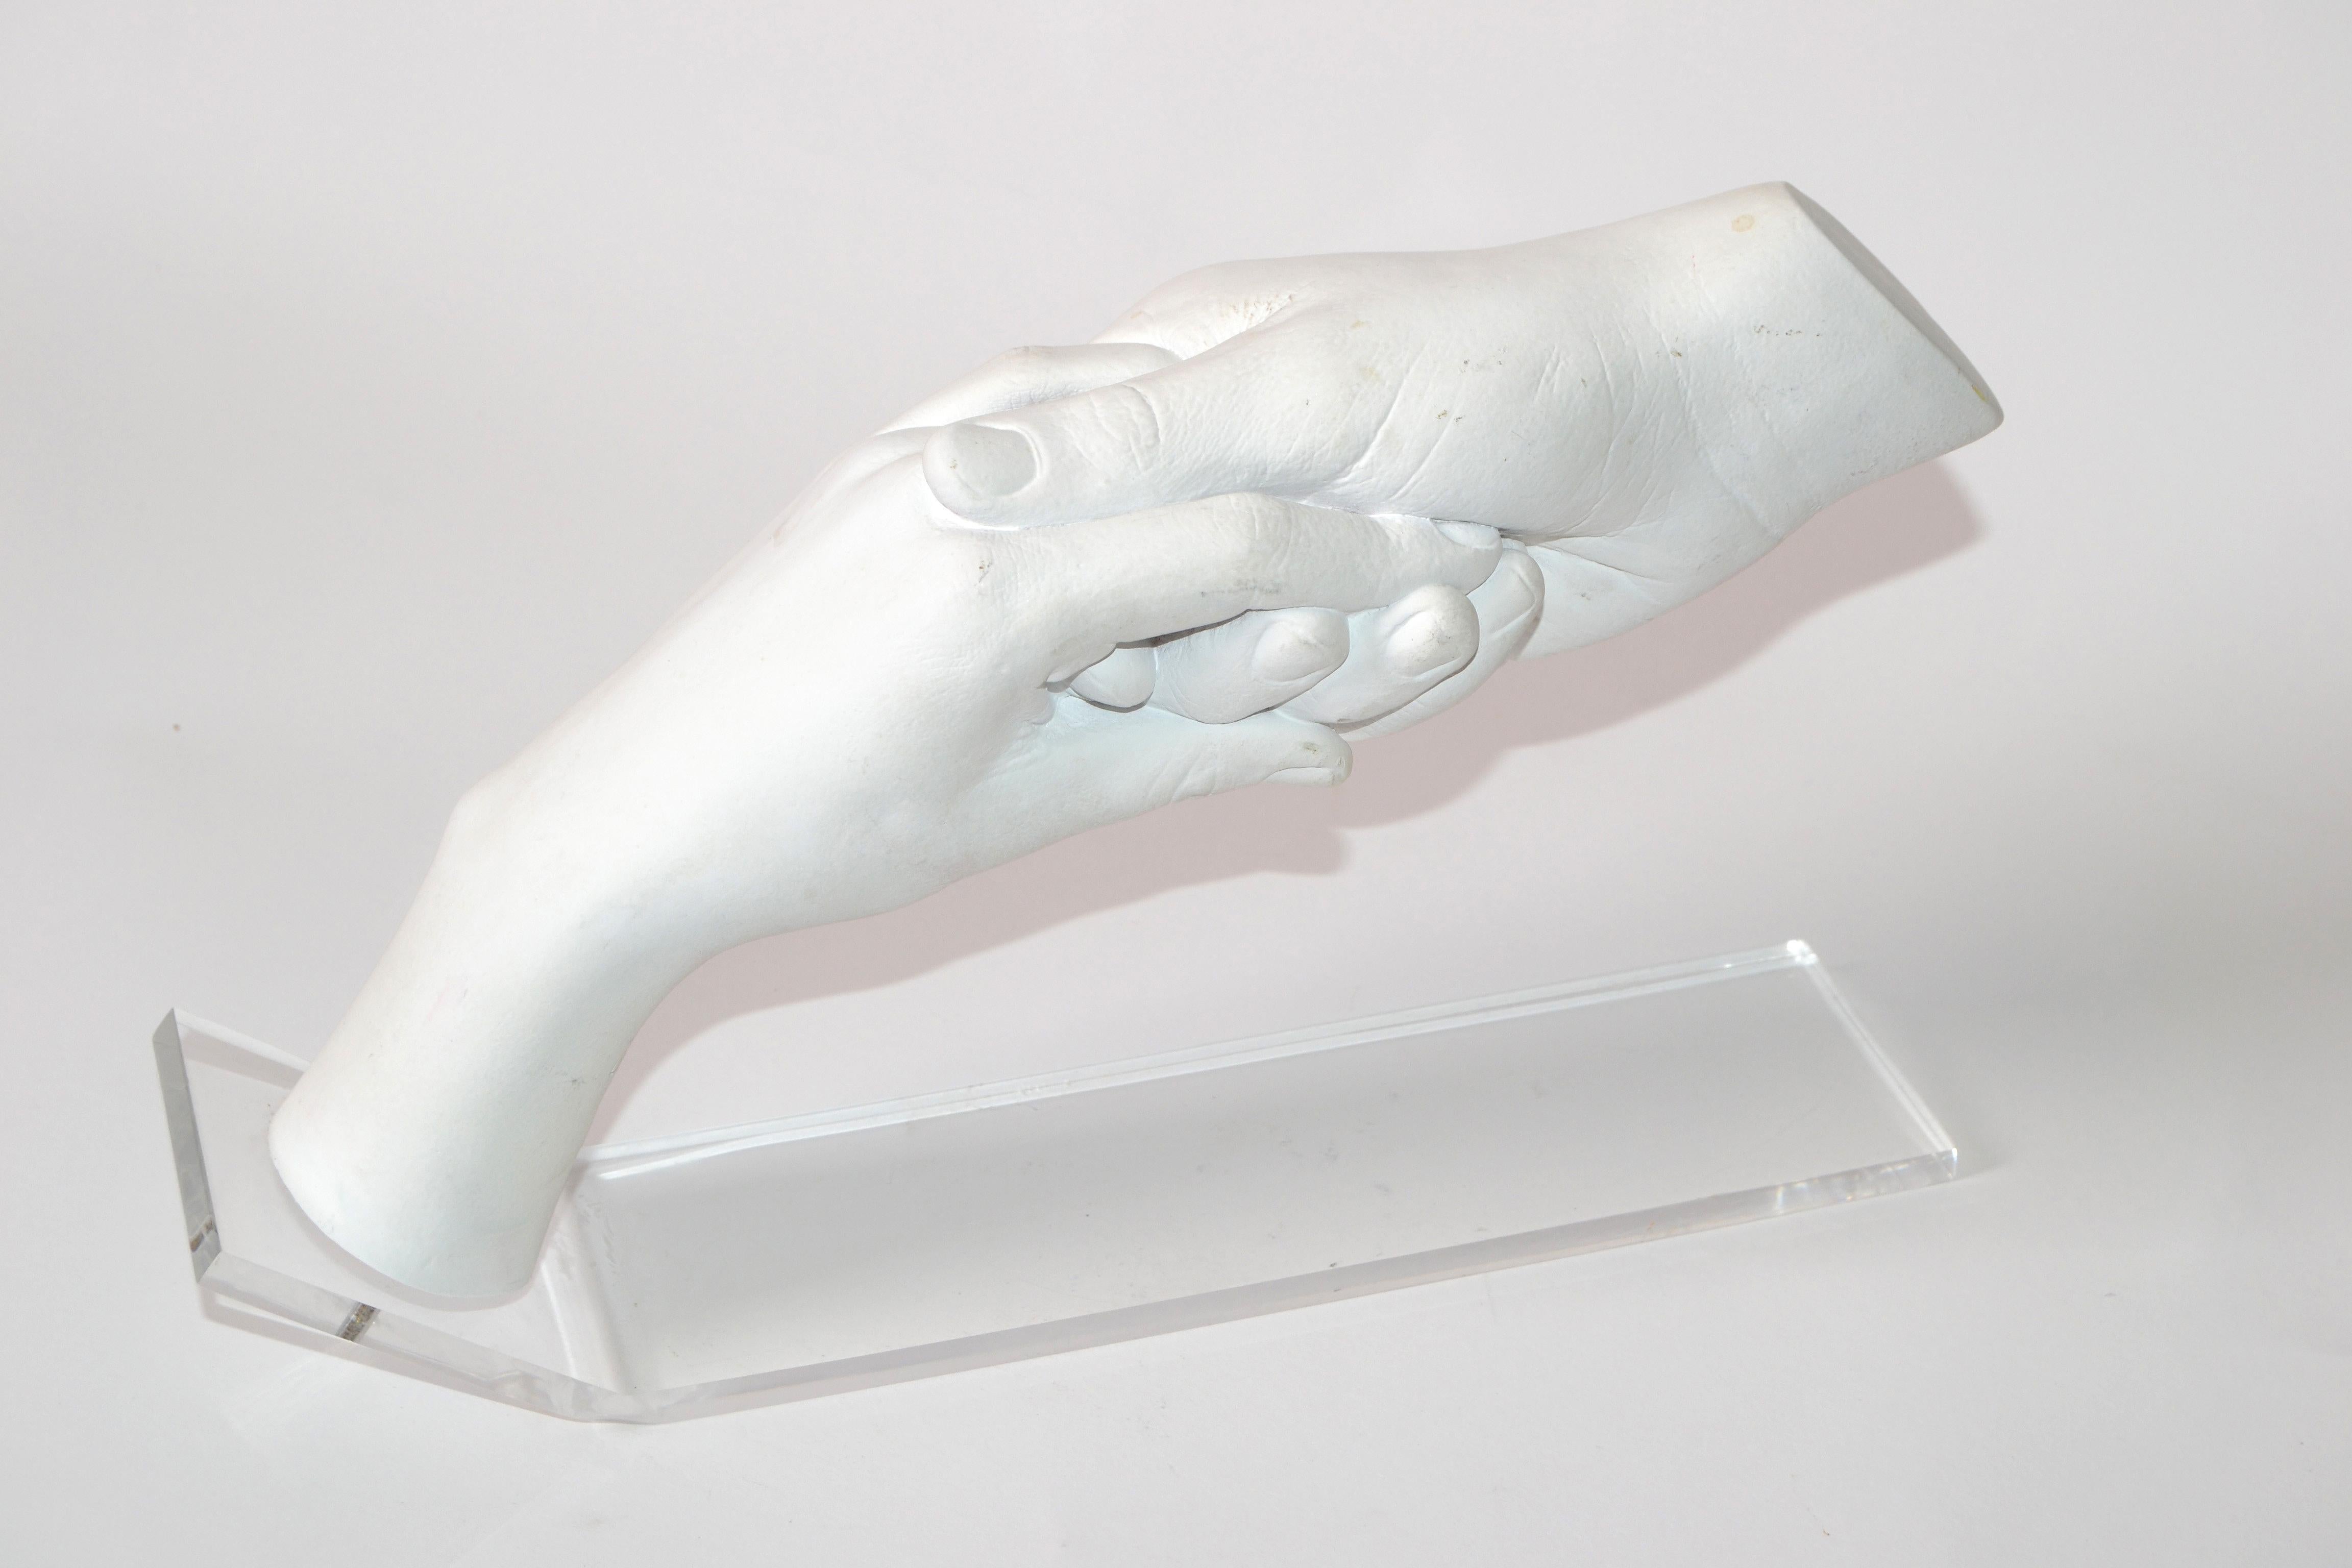 holding hands sculpture